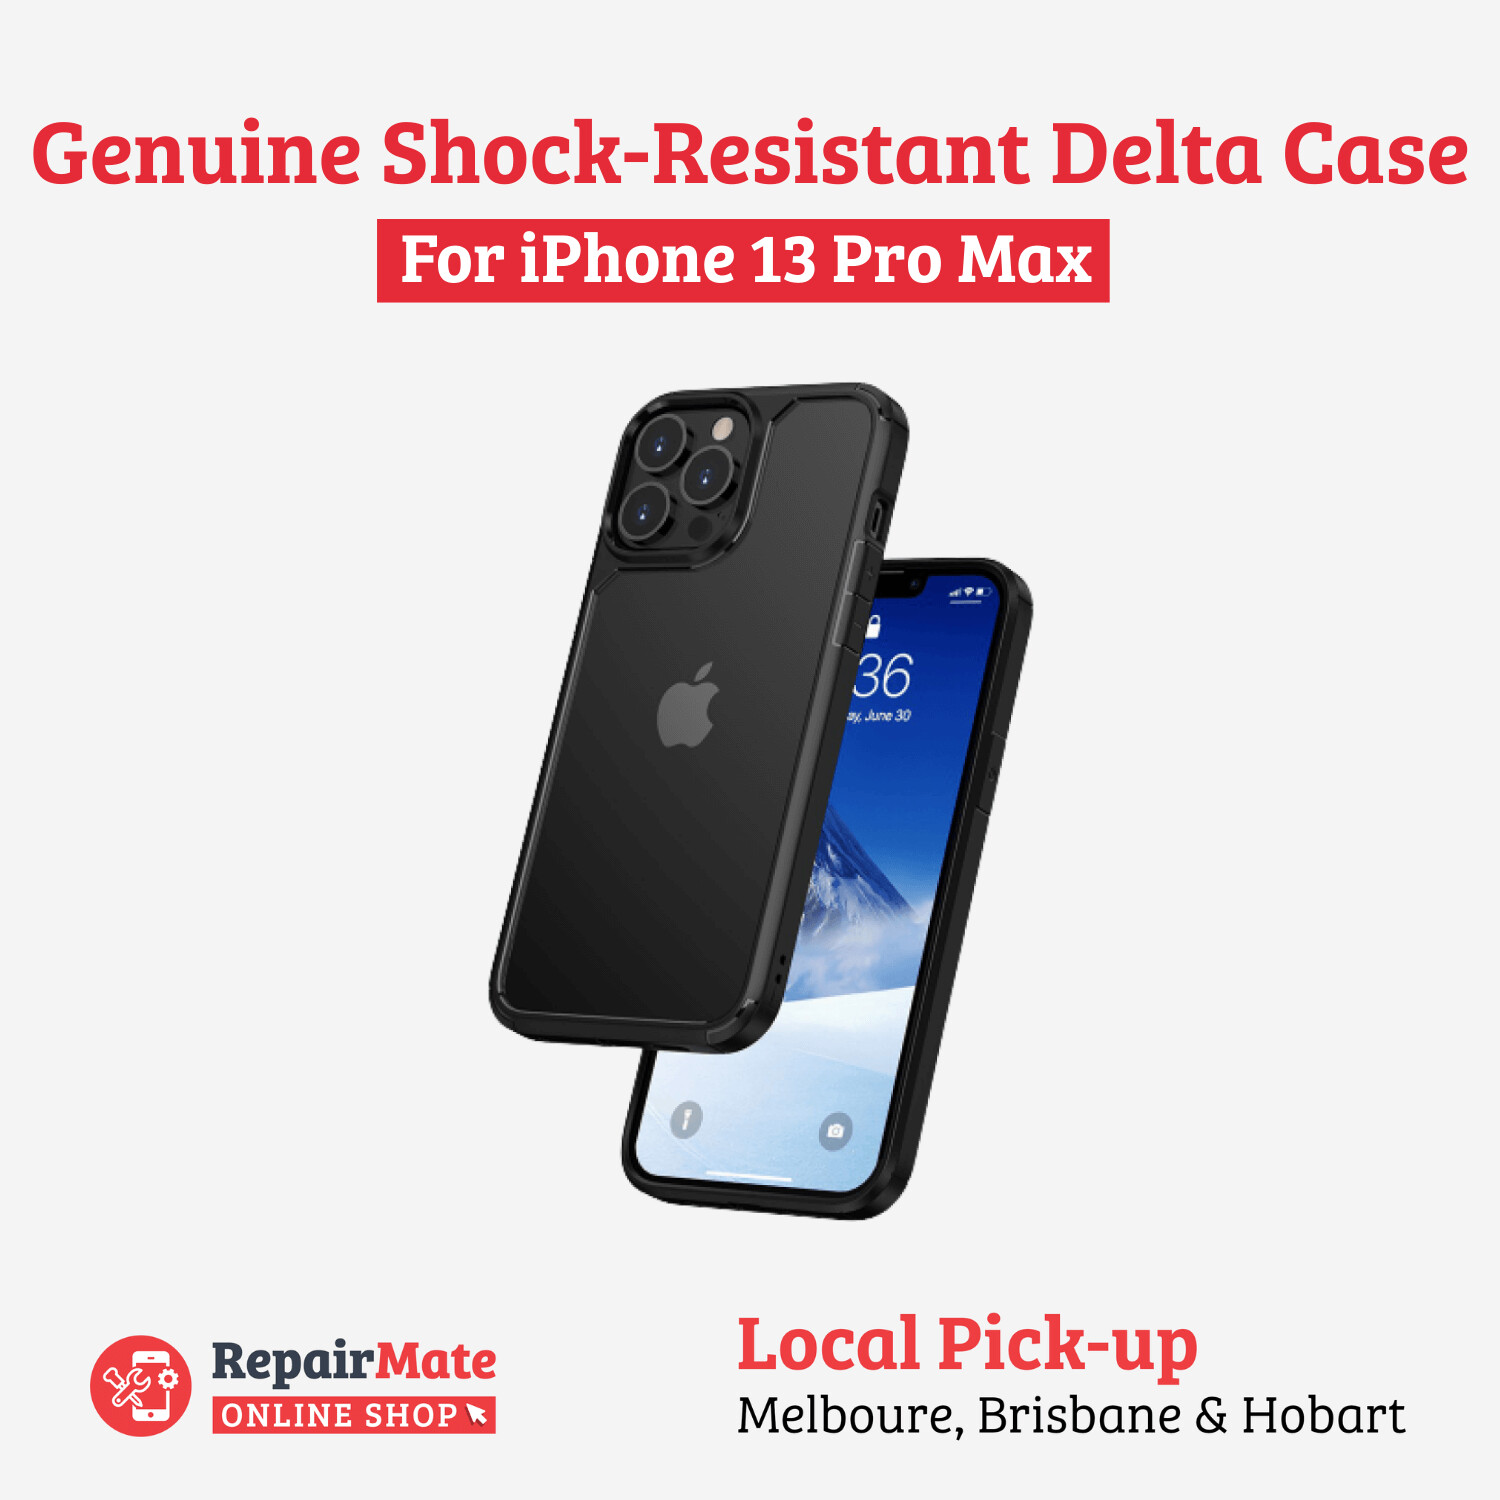 iPhone 13 Pro Max Genuine Shock-Resistant Delta Case